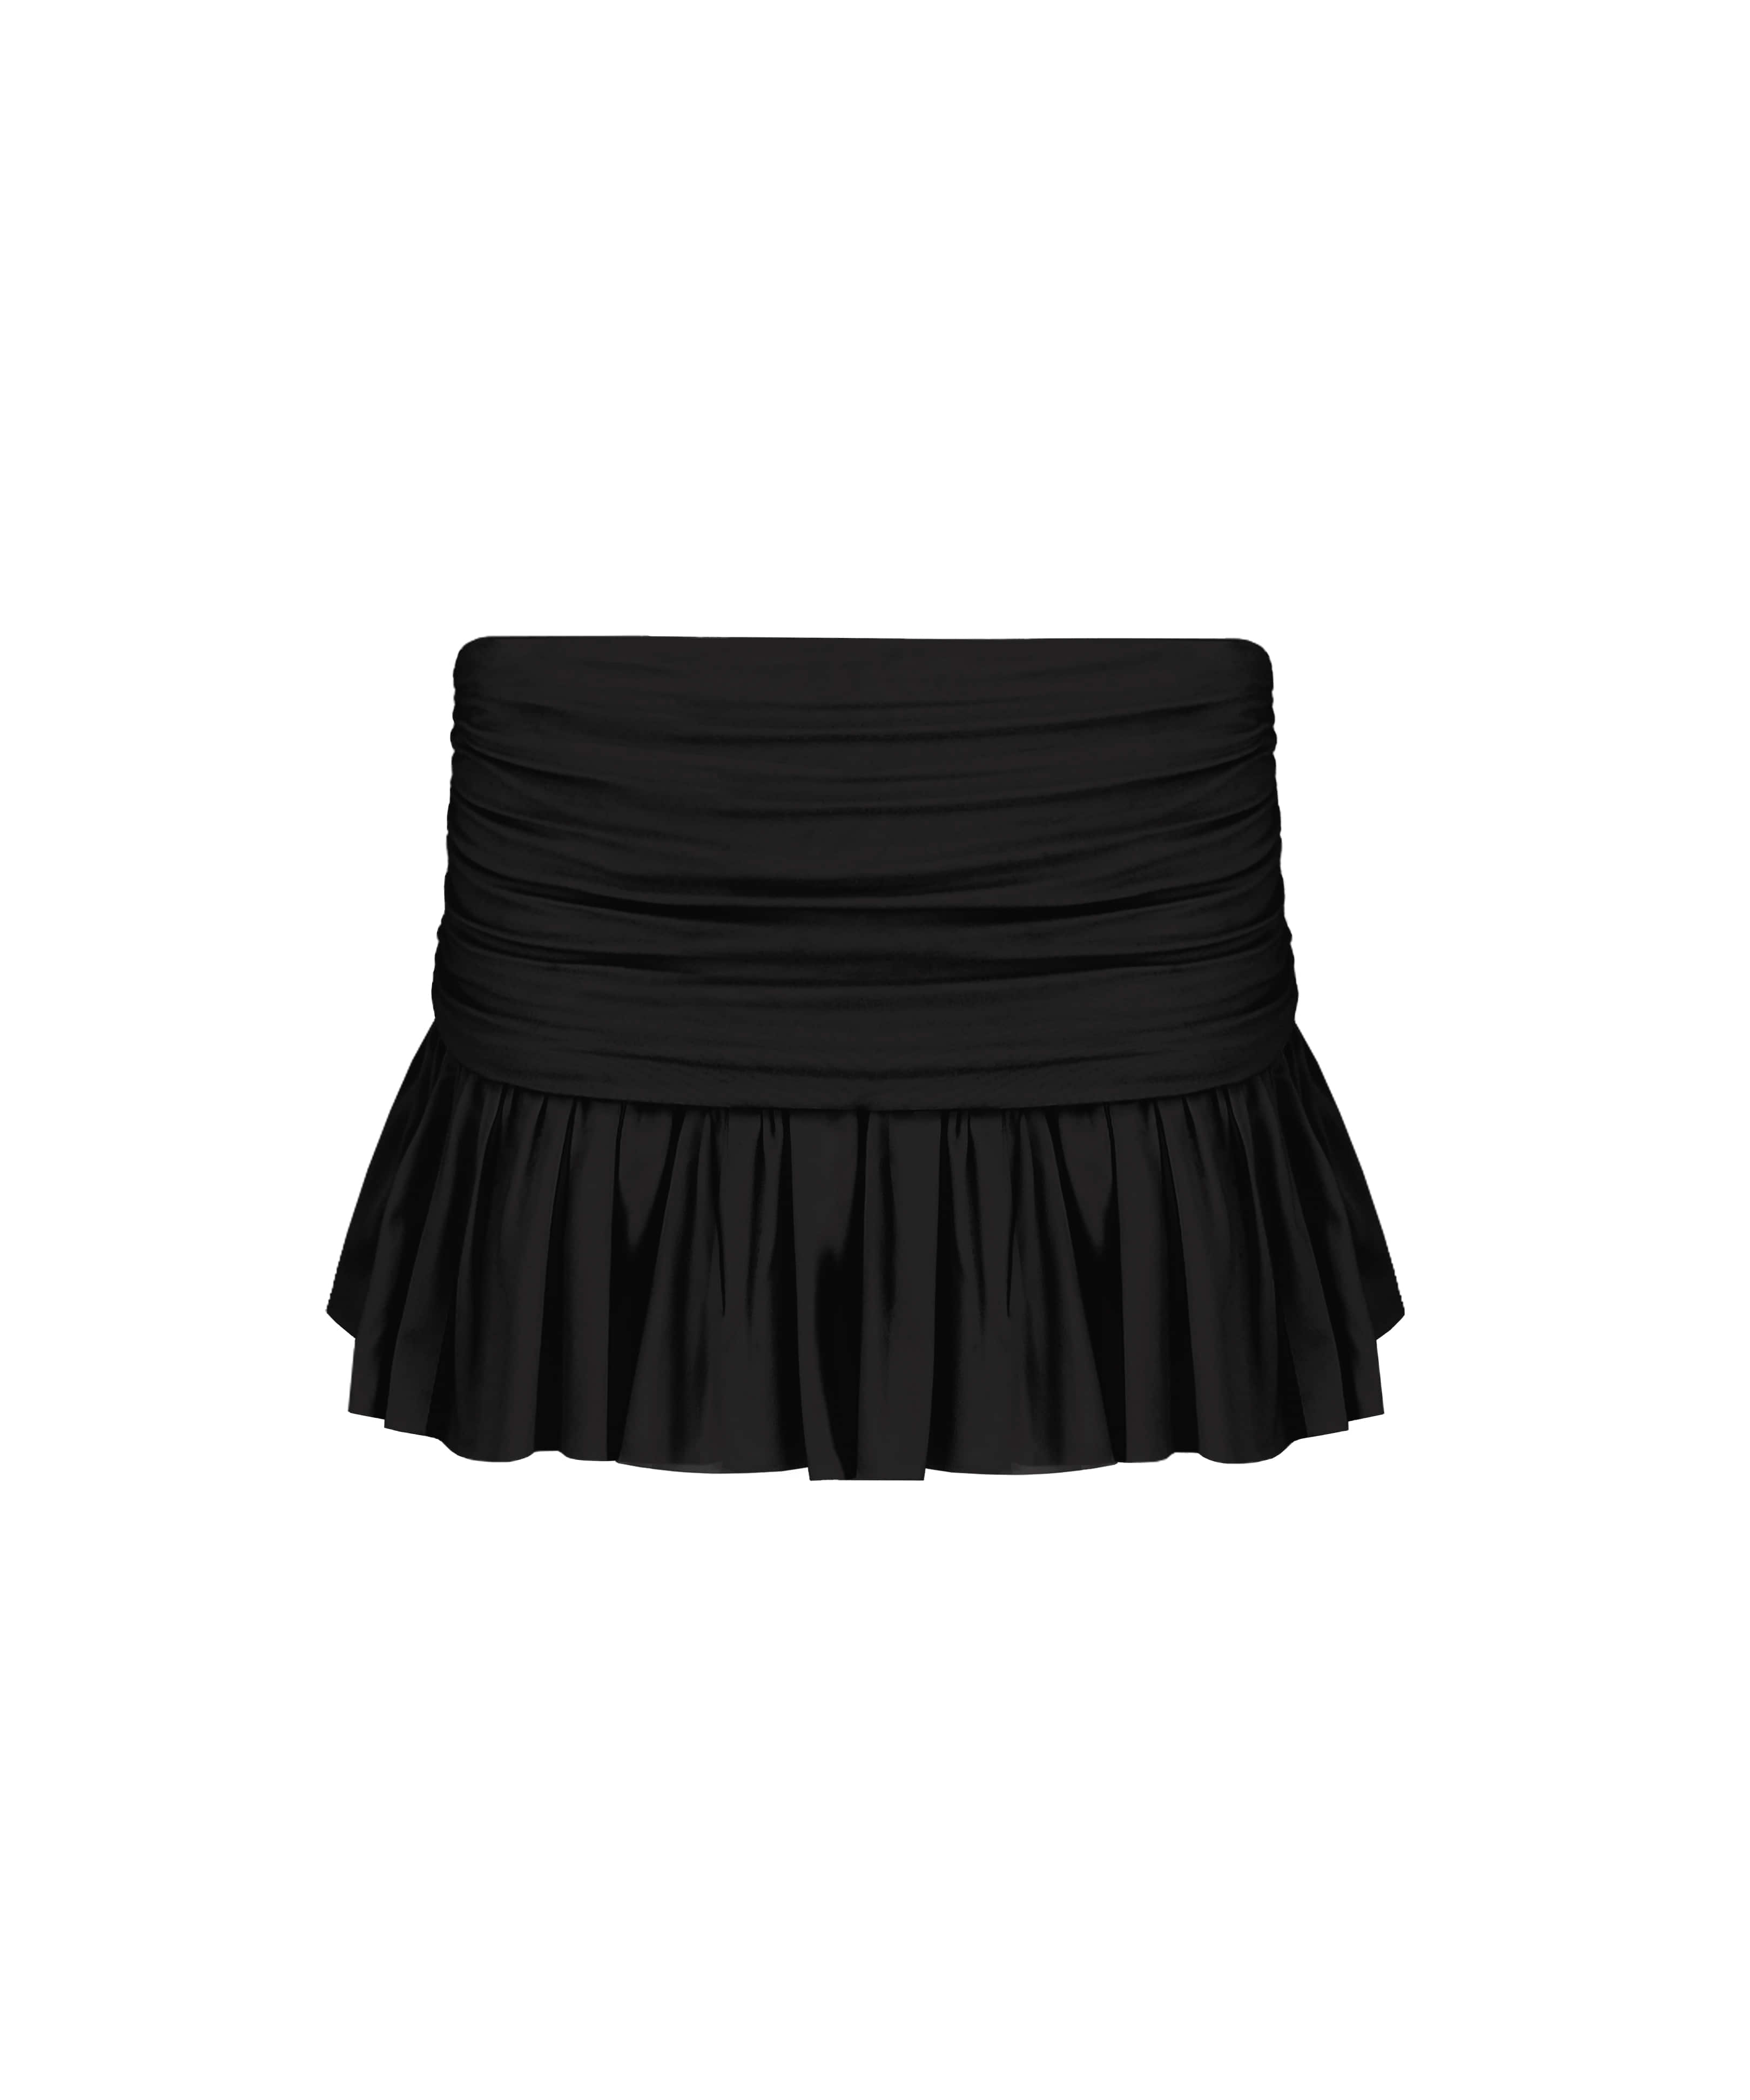 [Made] Beloved shirring skirt